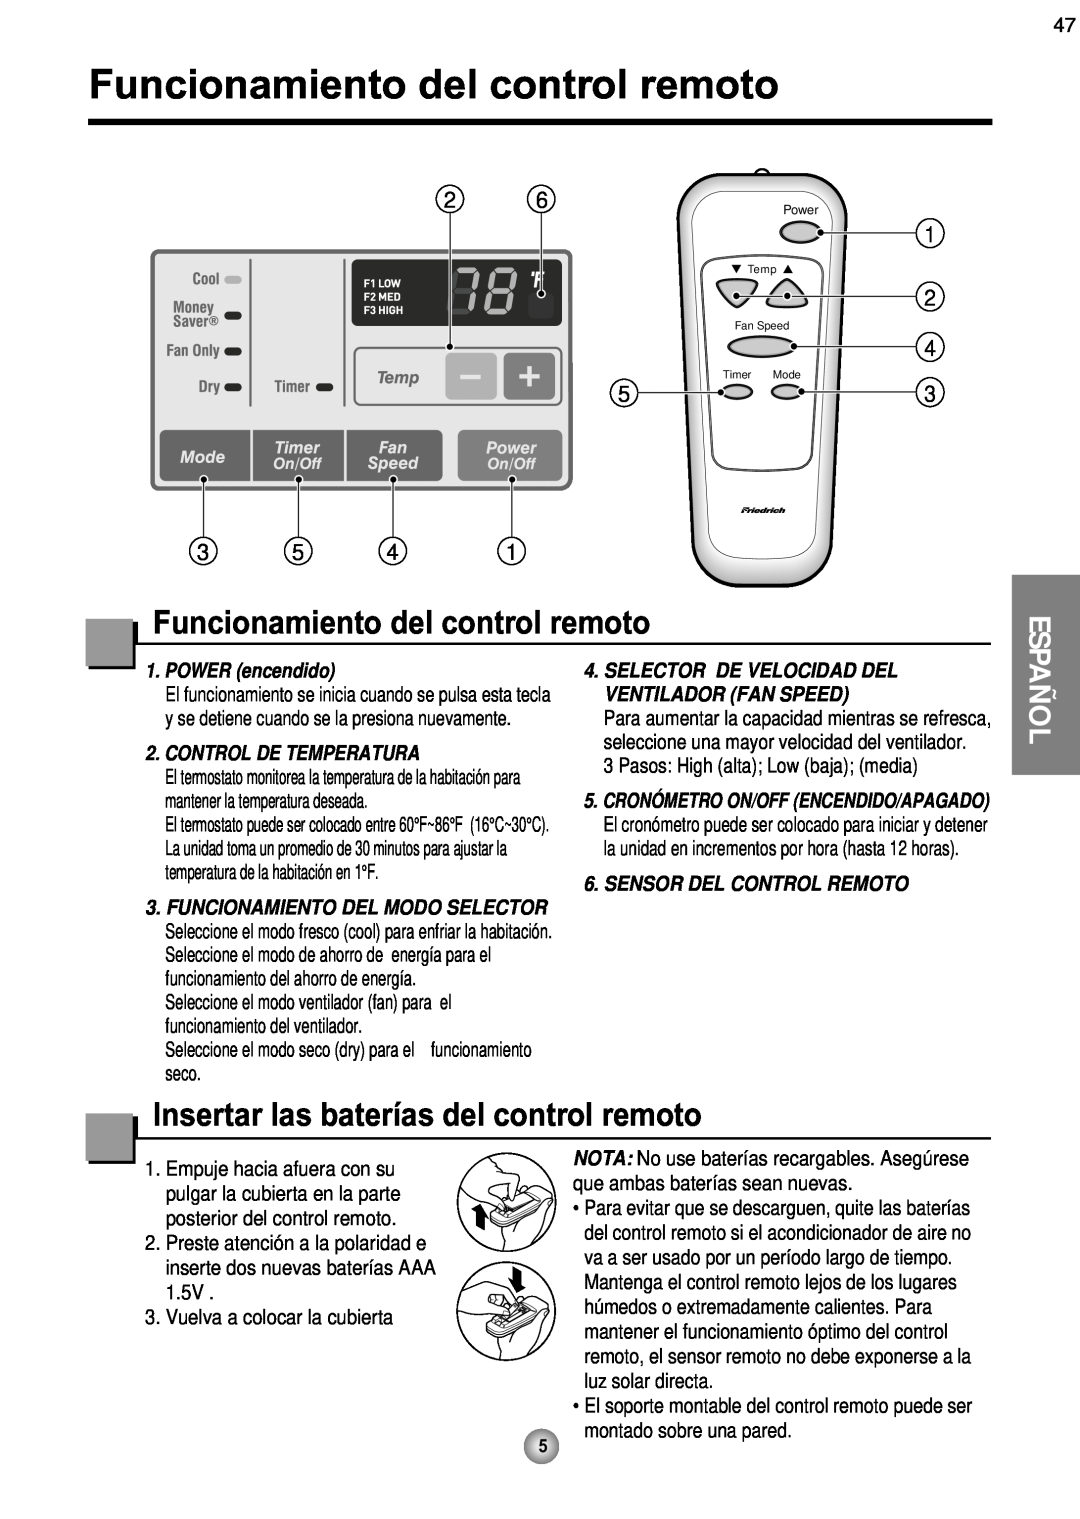 Friedrich ZQ08, ZQ10 operation manual Funcionamiento del control remoto, 1 2 4 3, POWER encendido, Control De Temperatura 